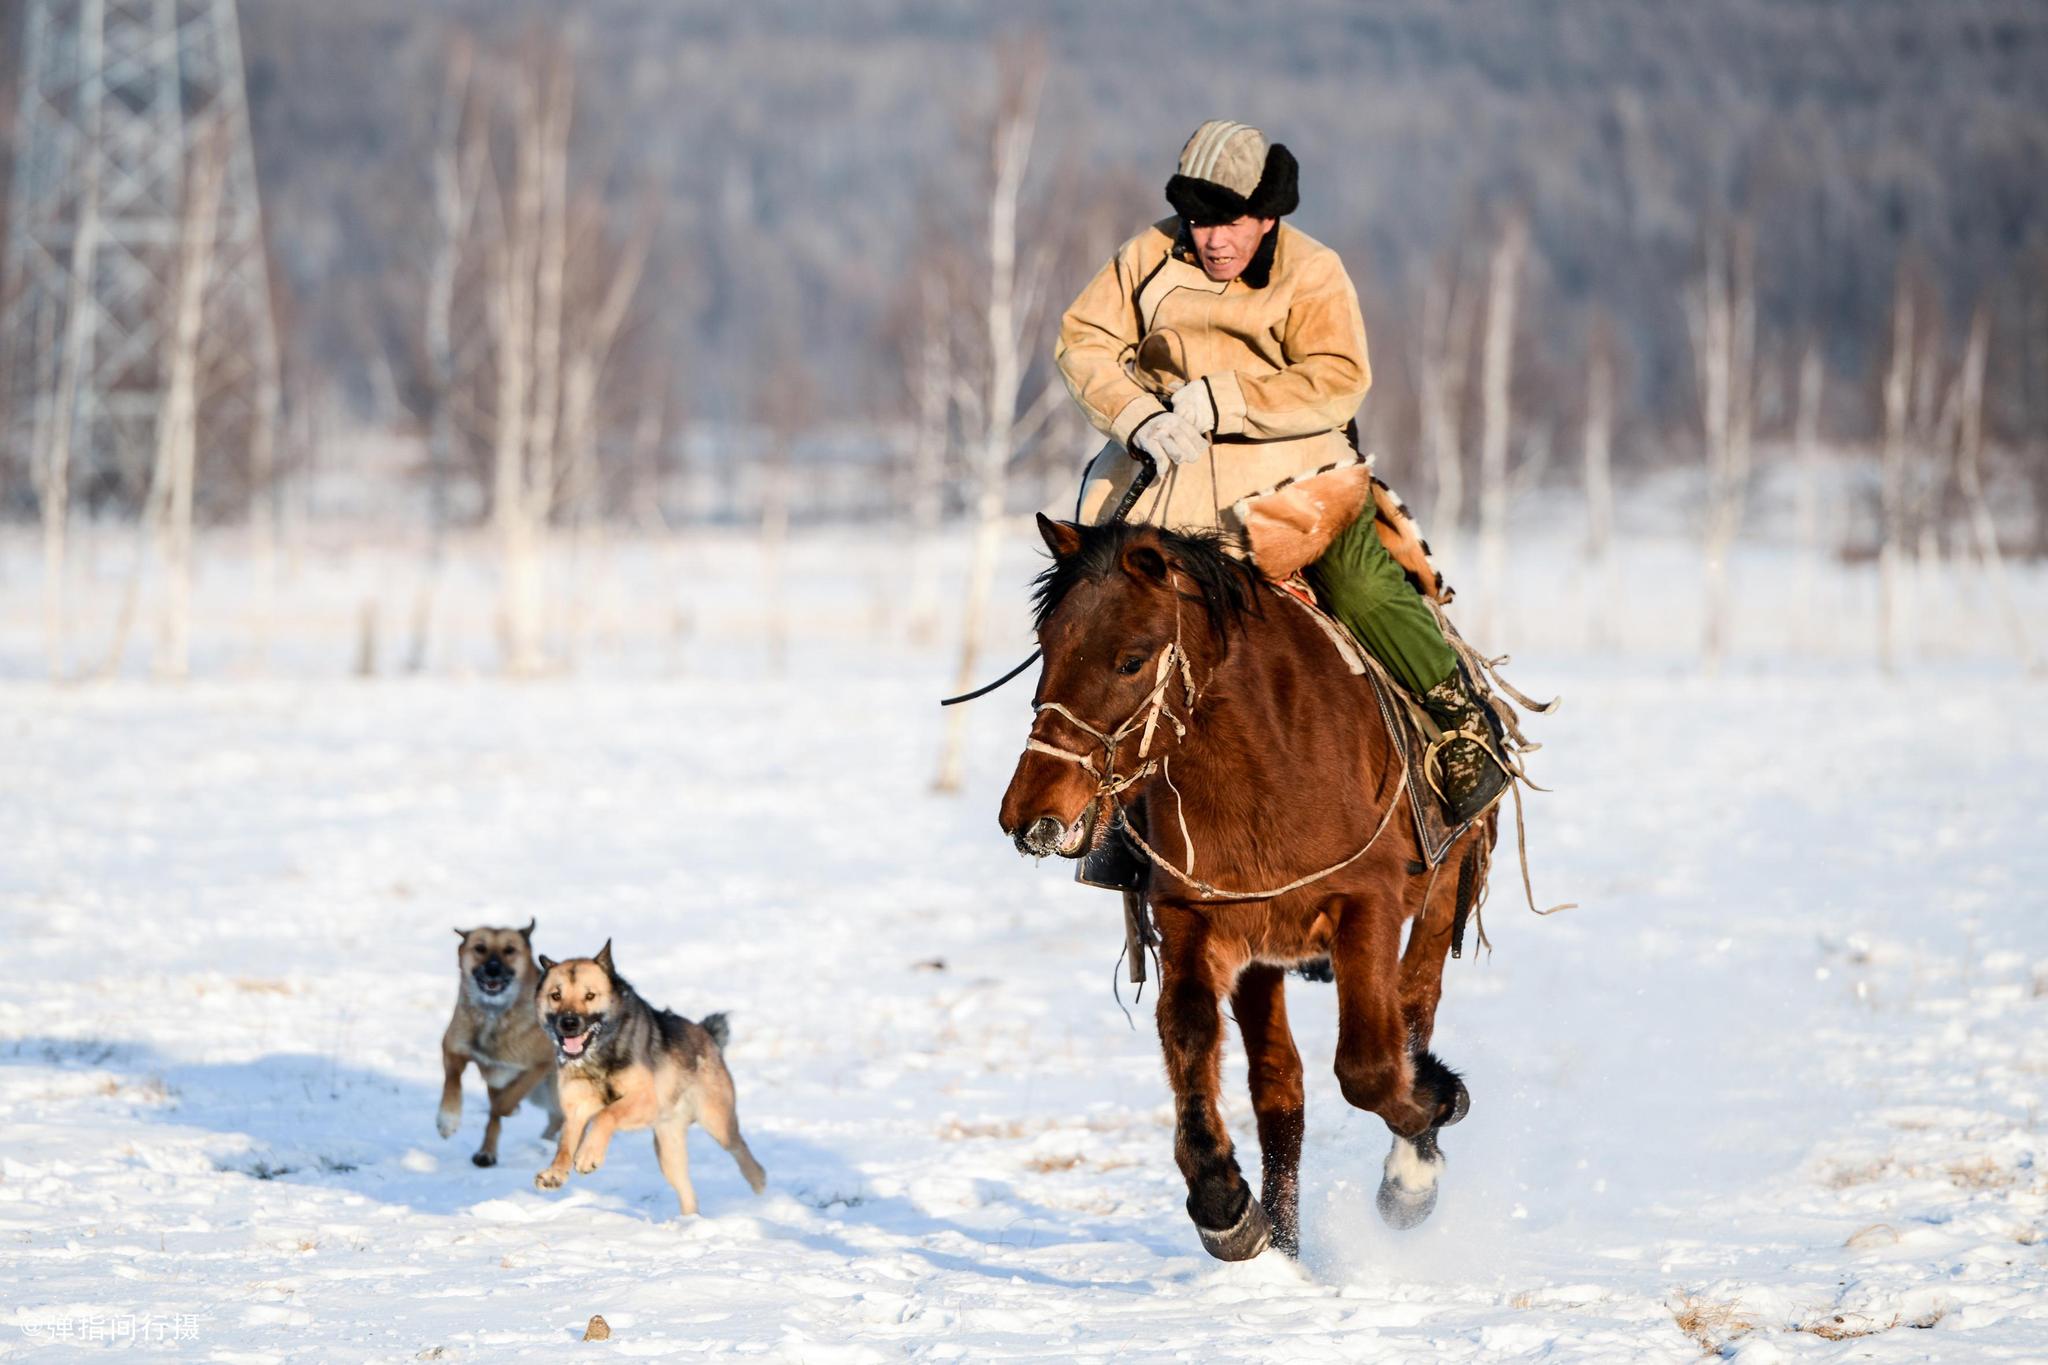 高端定制 | 狂野俄罗斯原始森林狩猎军事之旅 六人成团-千行网